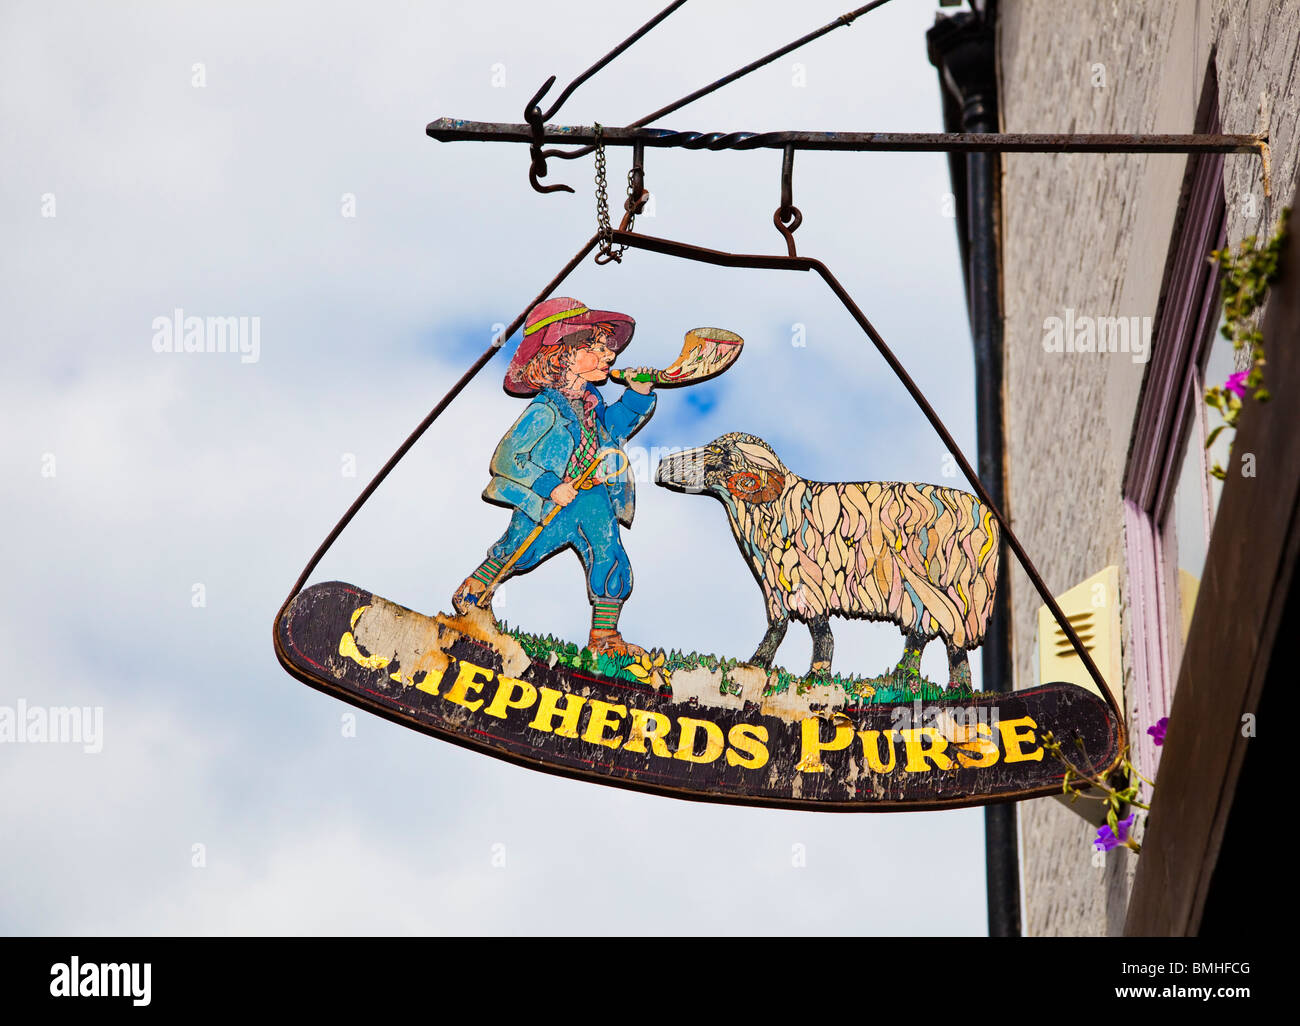 The Shepherds Purse traditional UK Pub signage at Whitby, North Yorkshire, UK Stock Photo